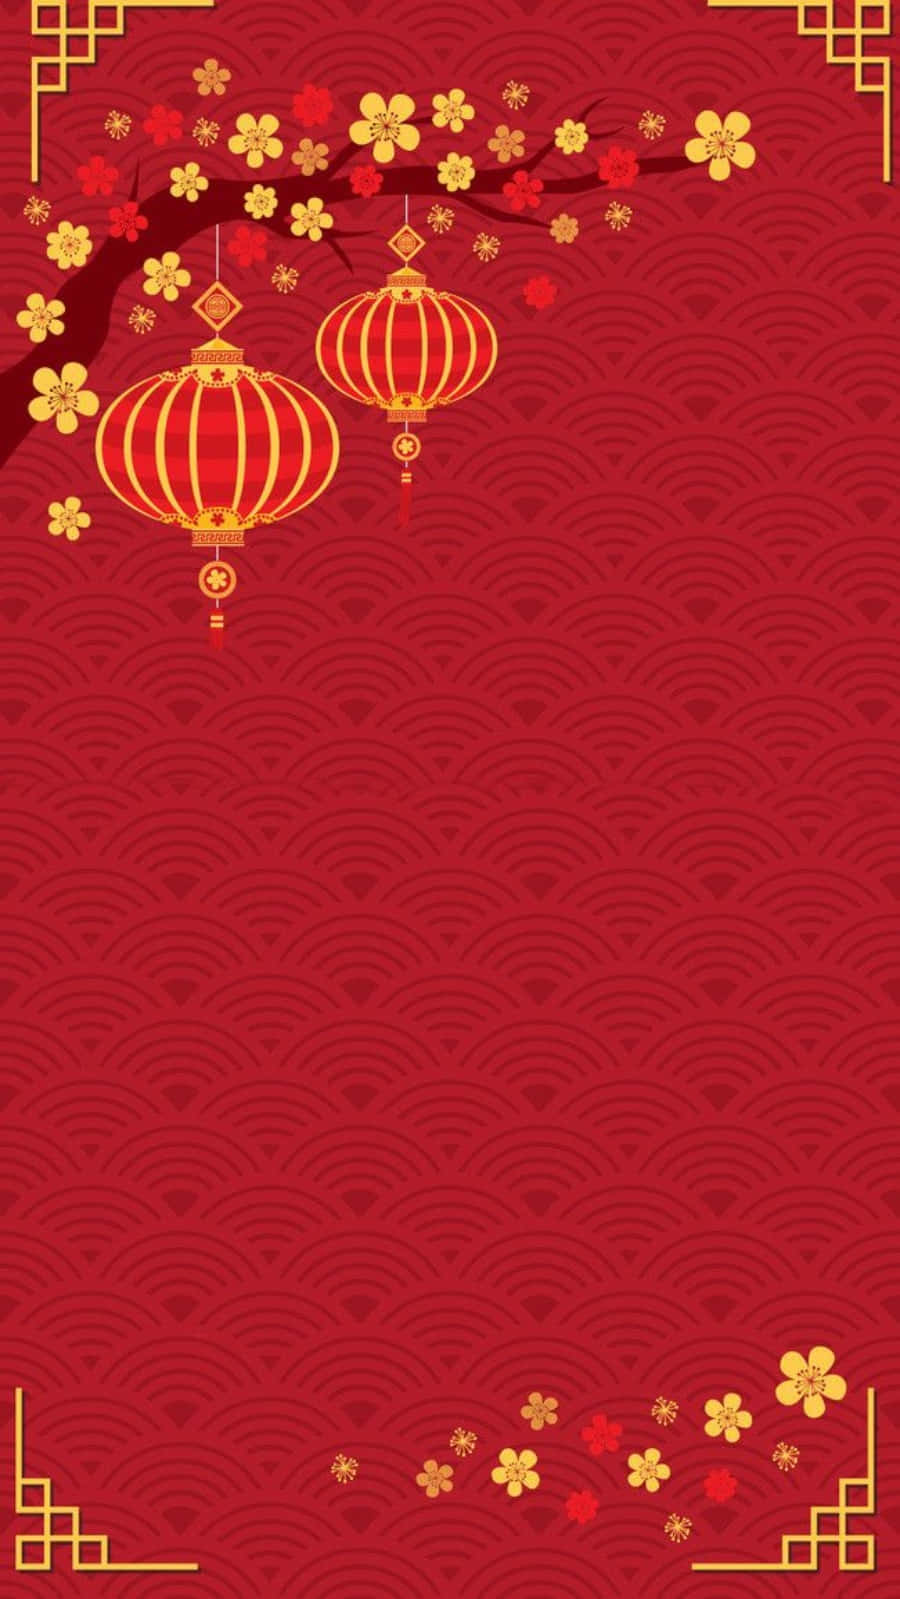 Feiernsie Das Chinesische Neujahr Mit Dem Neuesten Iphone. Wallpaper